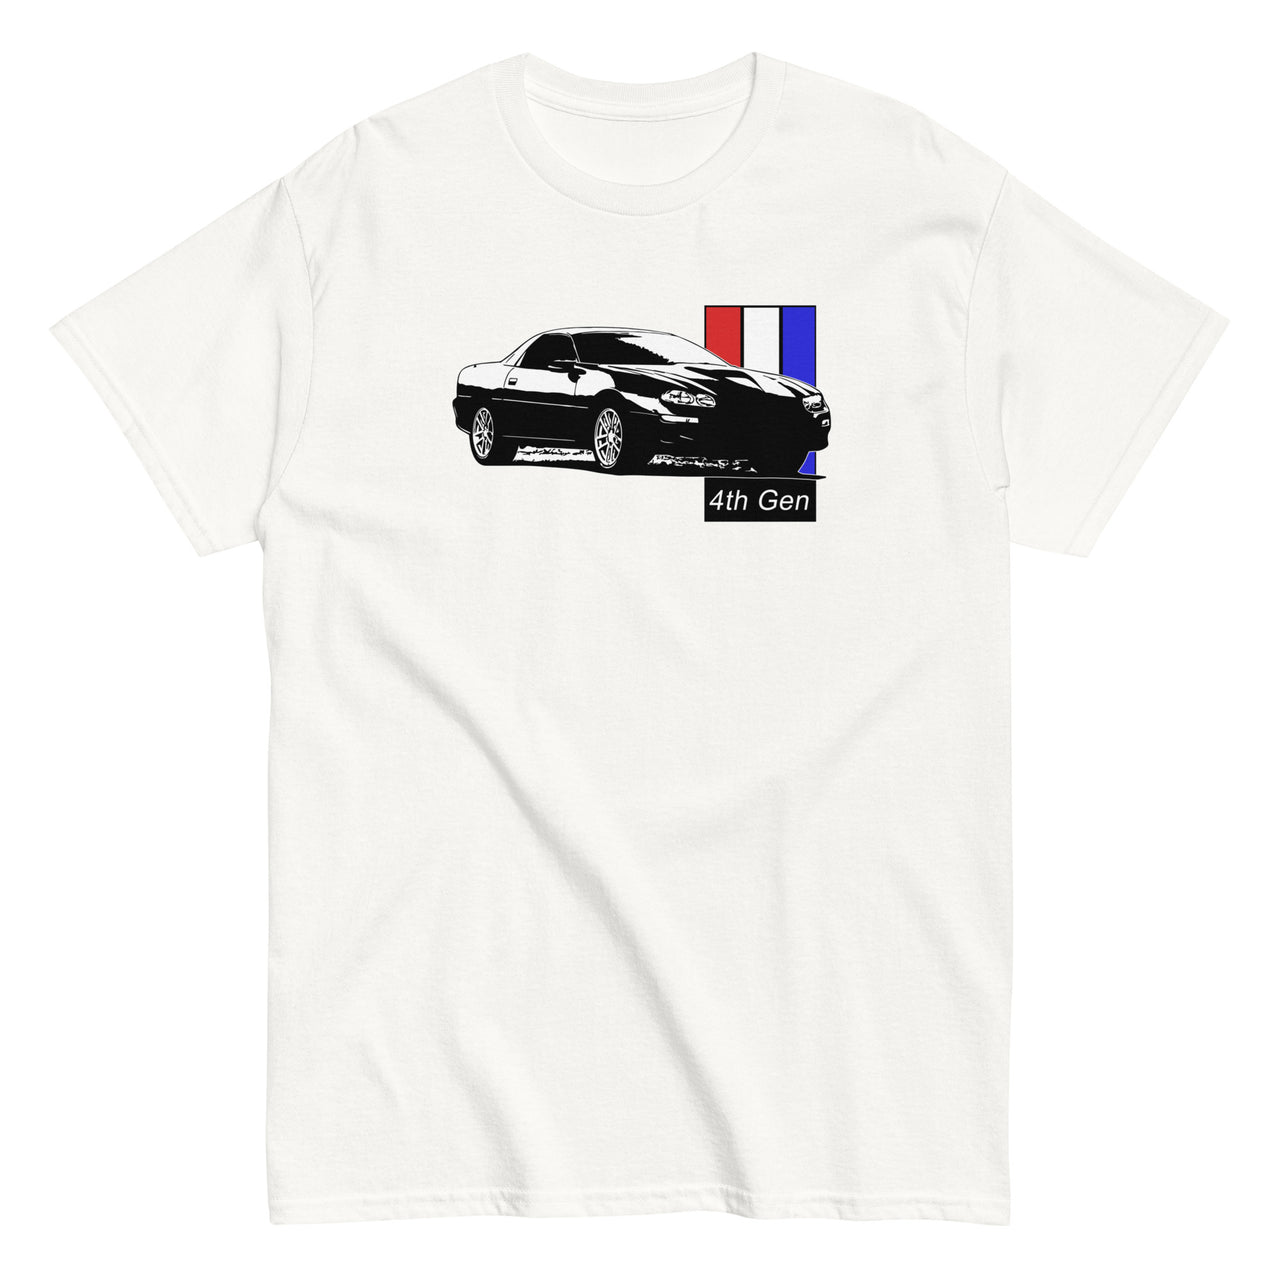 98-02 4th Gen Camaro T-Shirt in white